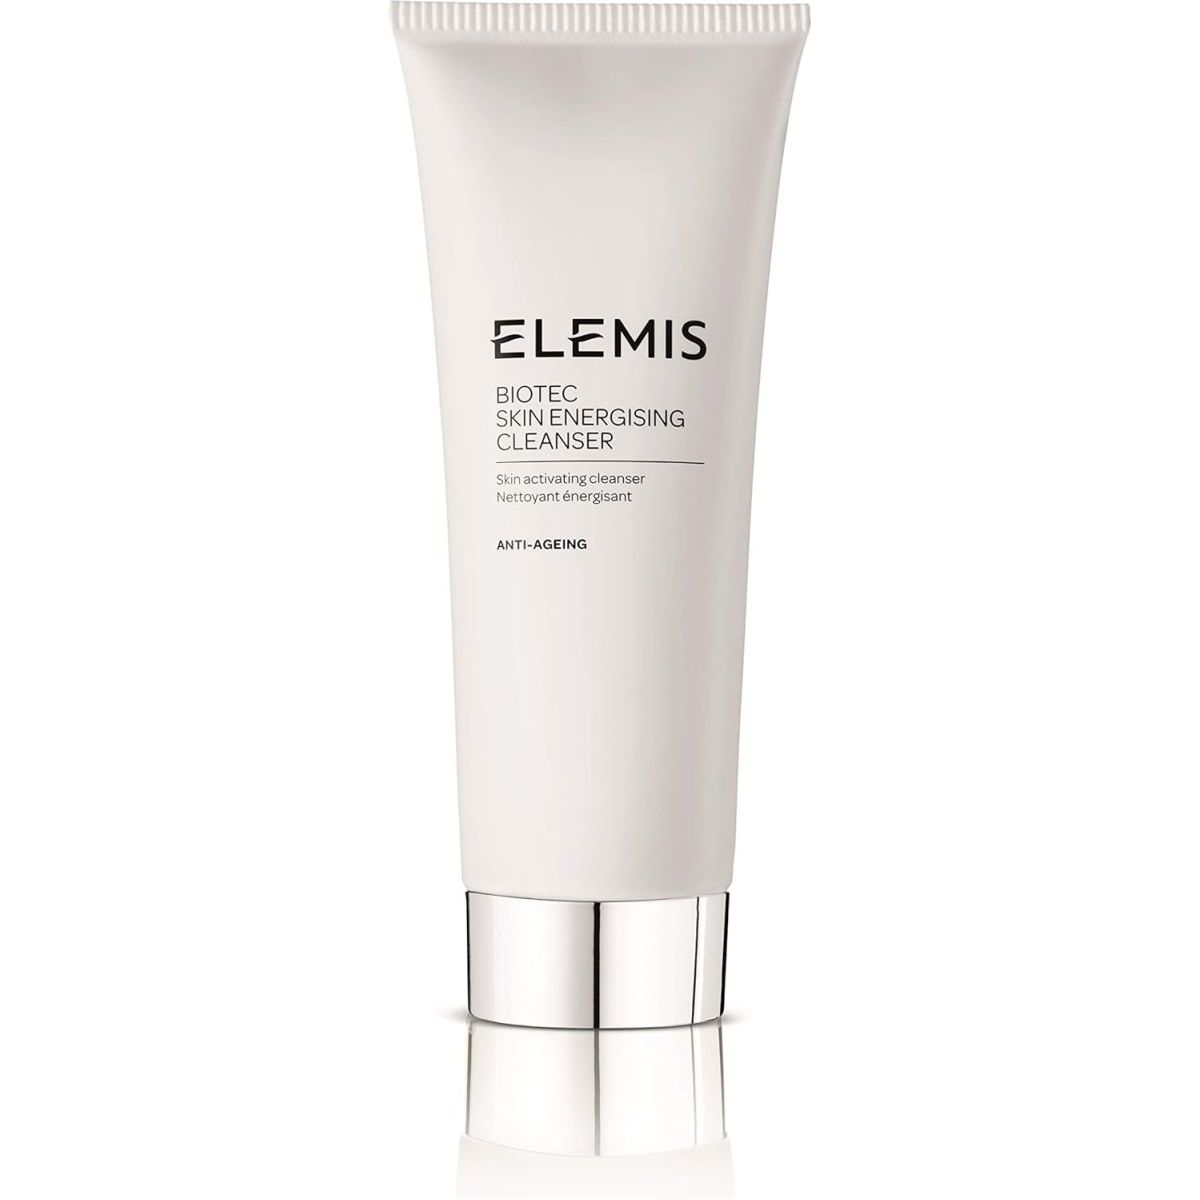 Elemis Biotec Skin Energising Cleanser 200 ml - DG International Ventures Limited